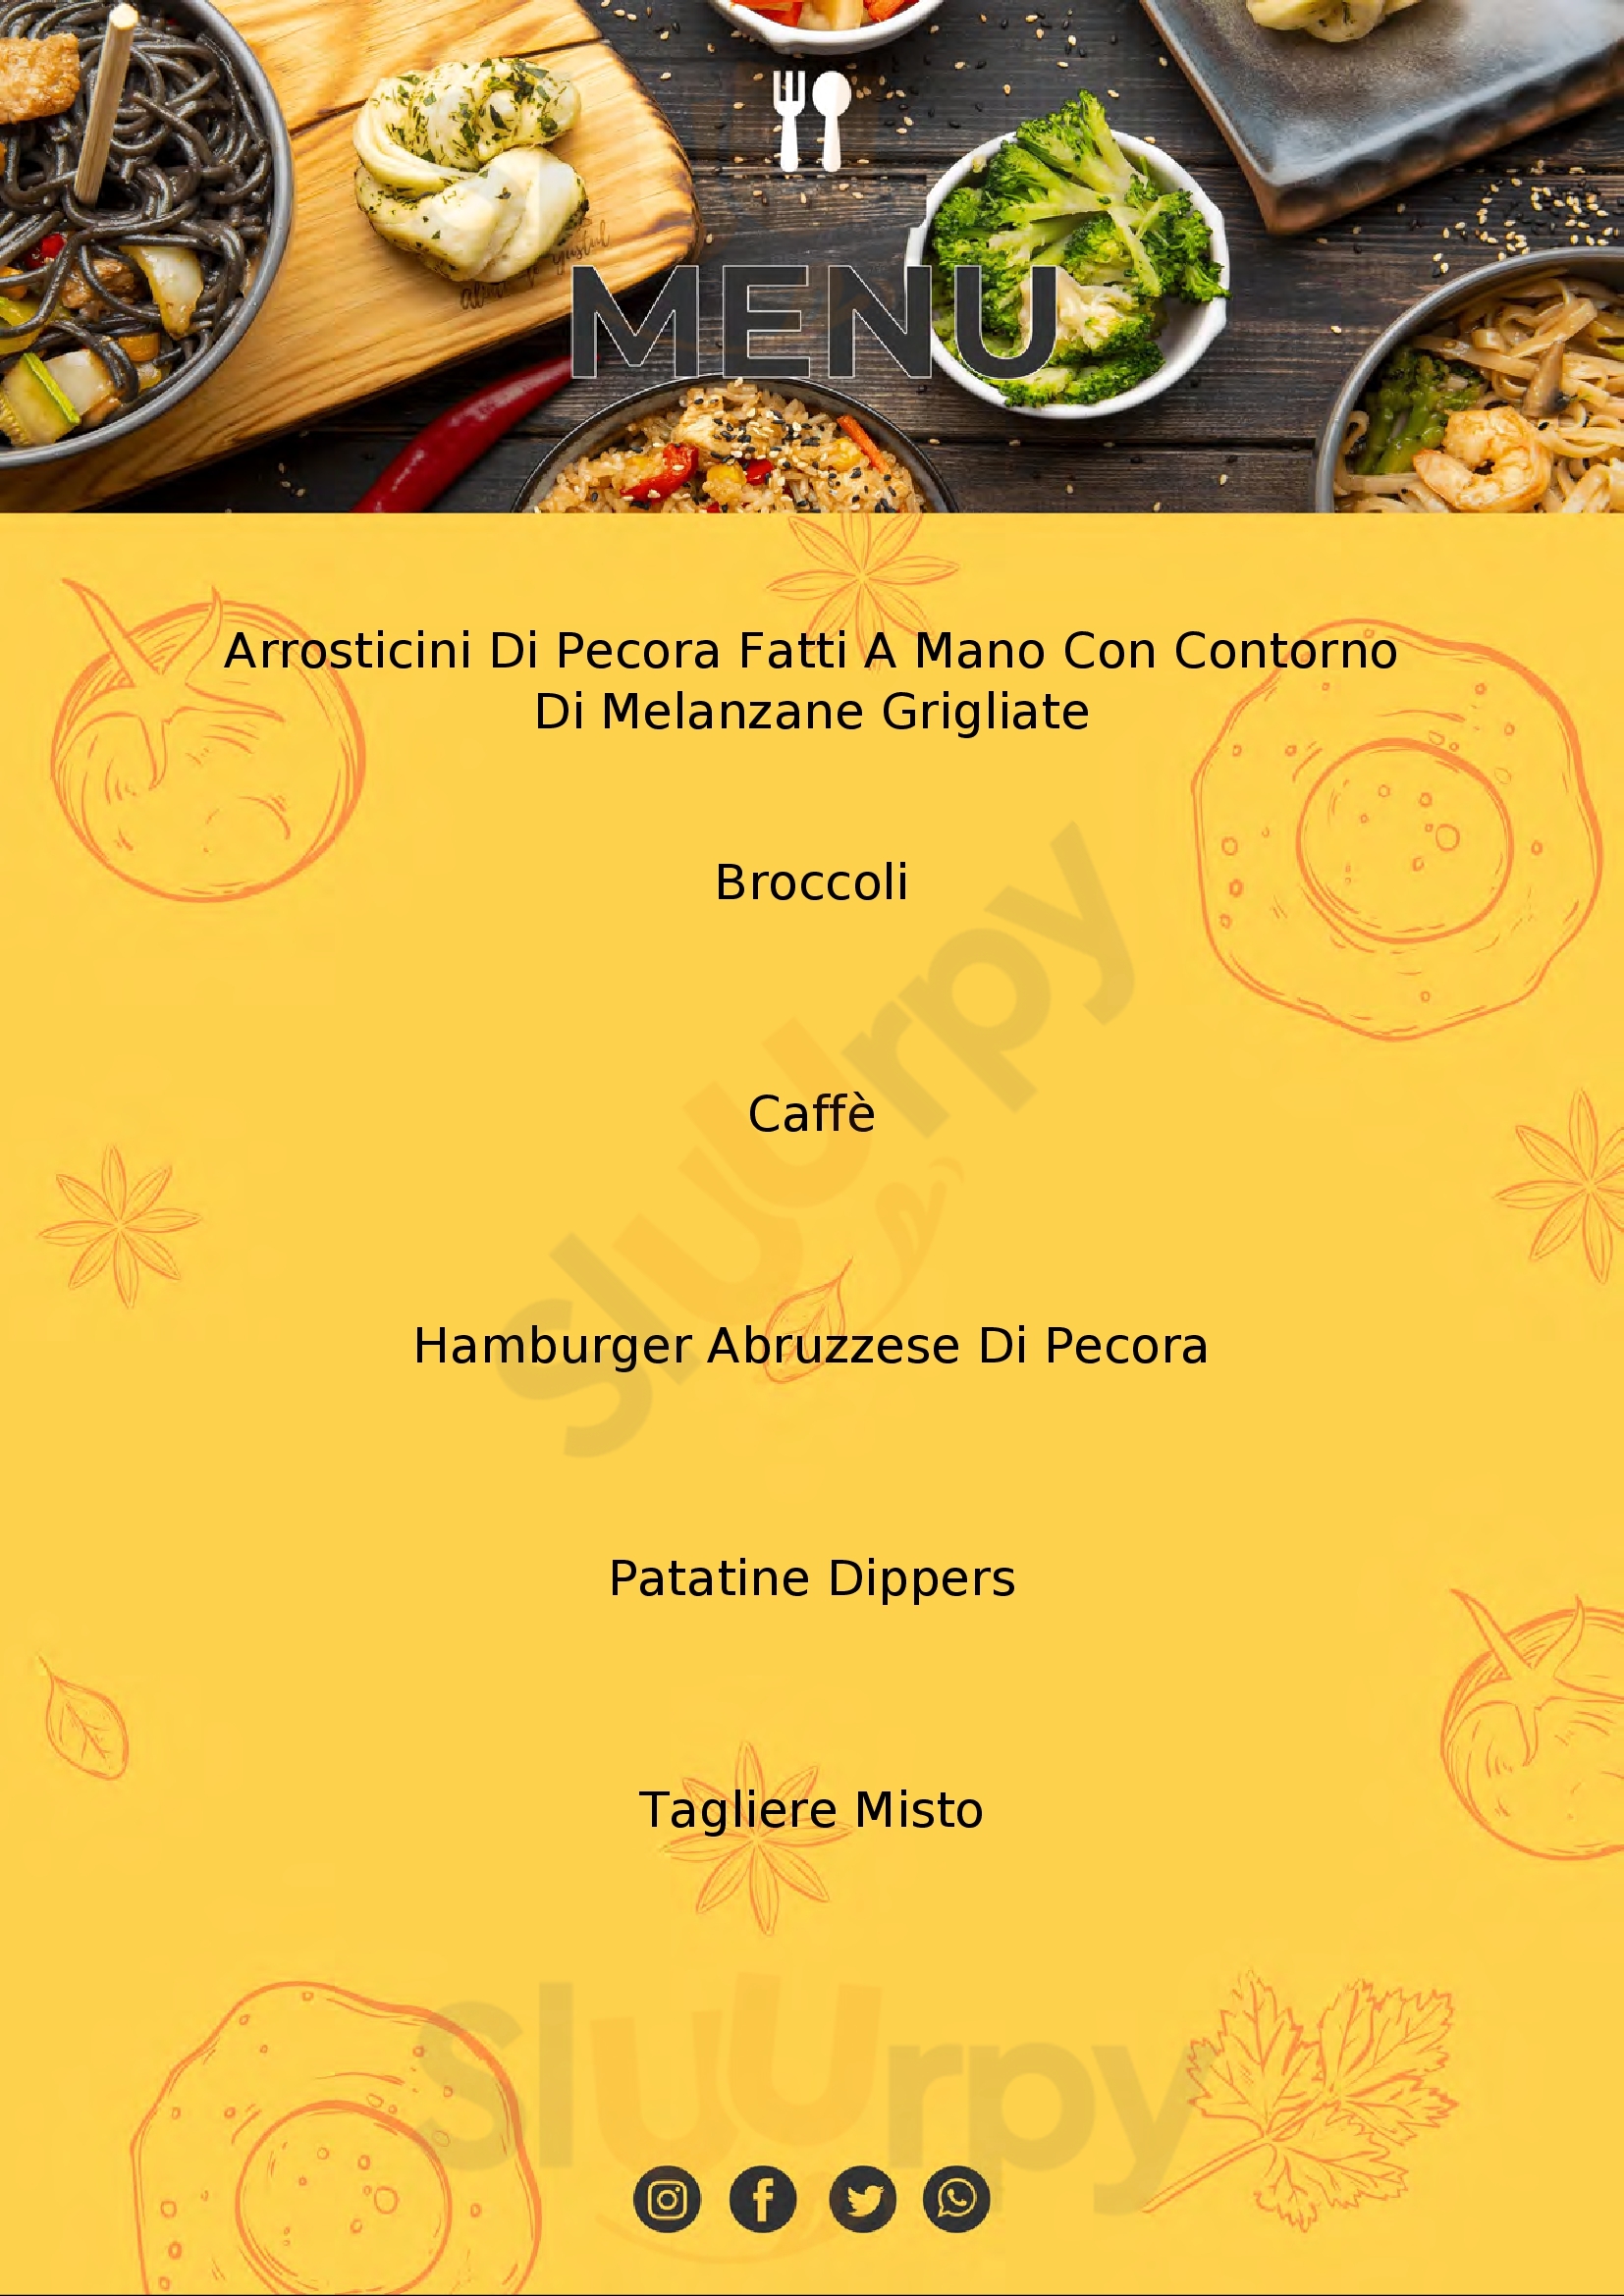 Trattoria D'Abruzzo Como menù 1 pagina